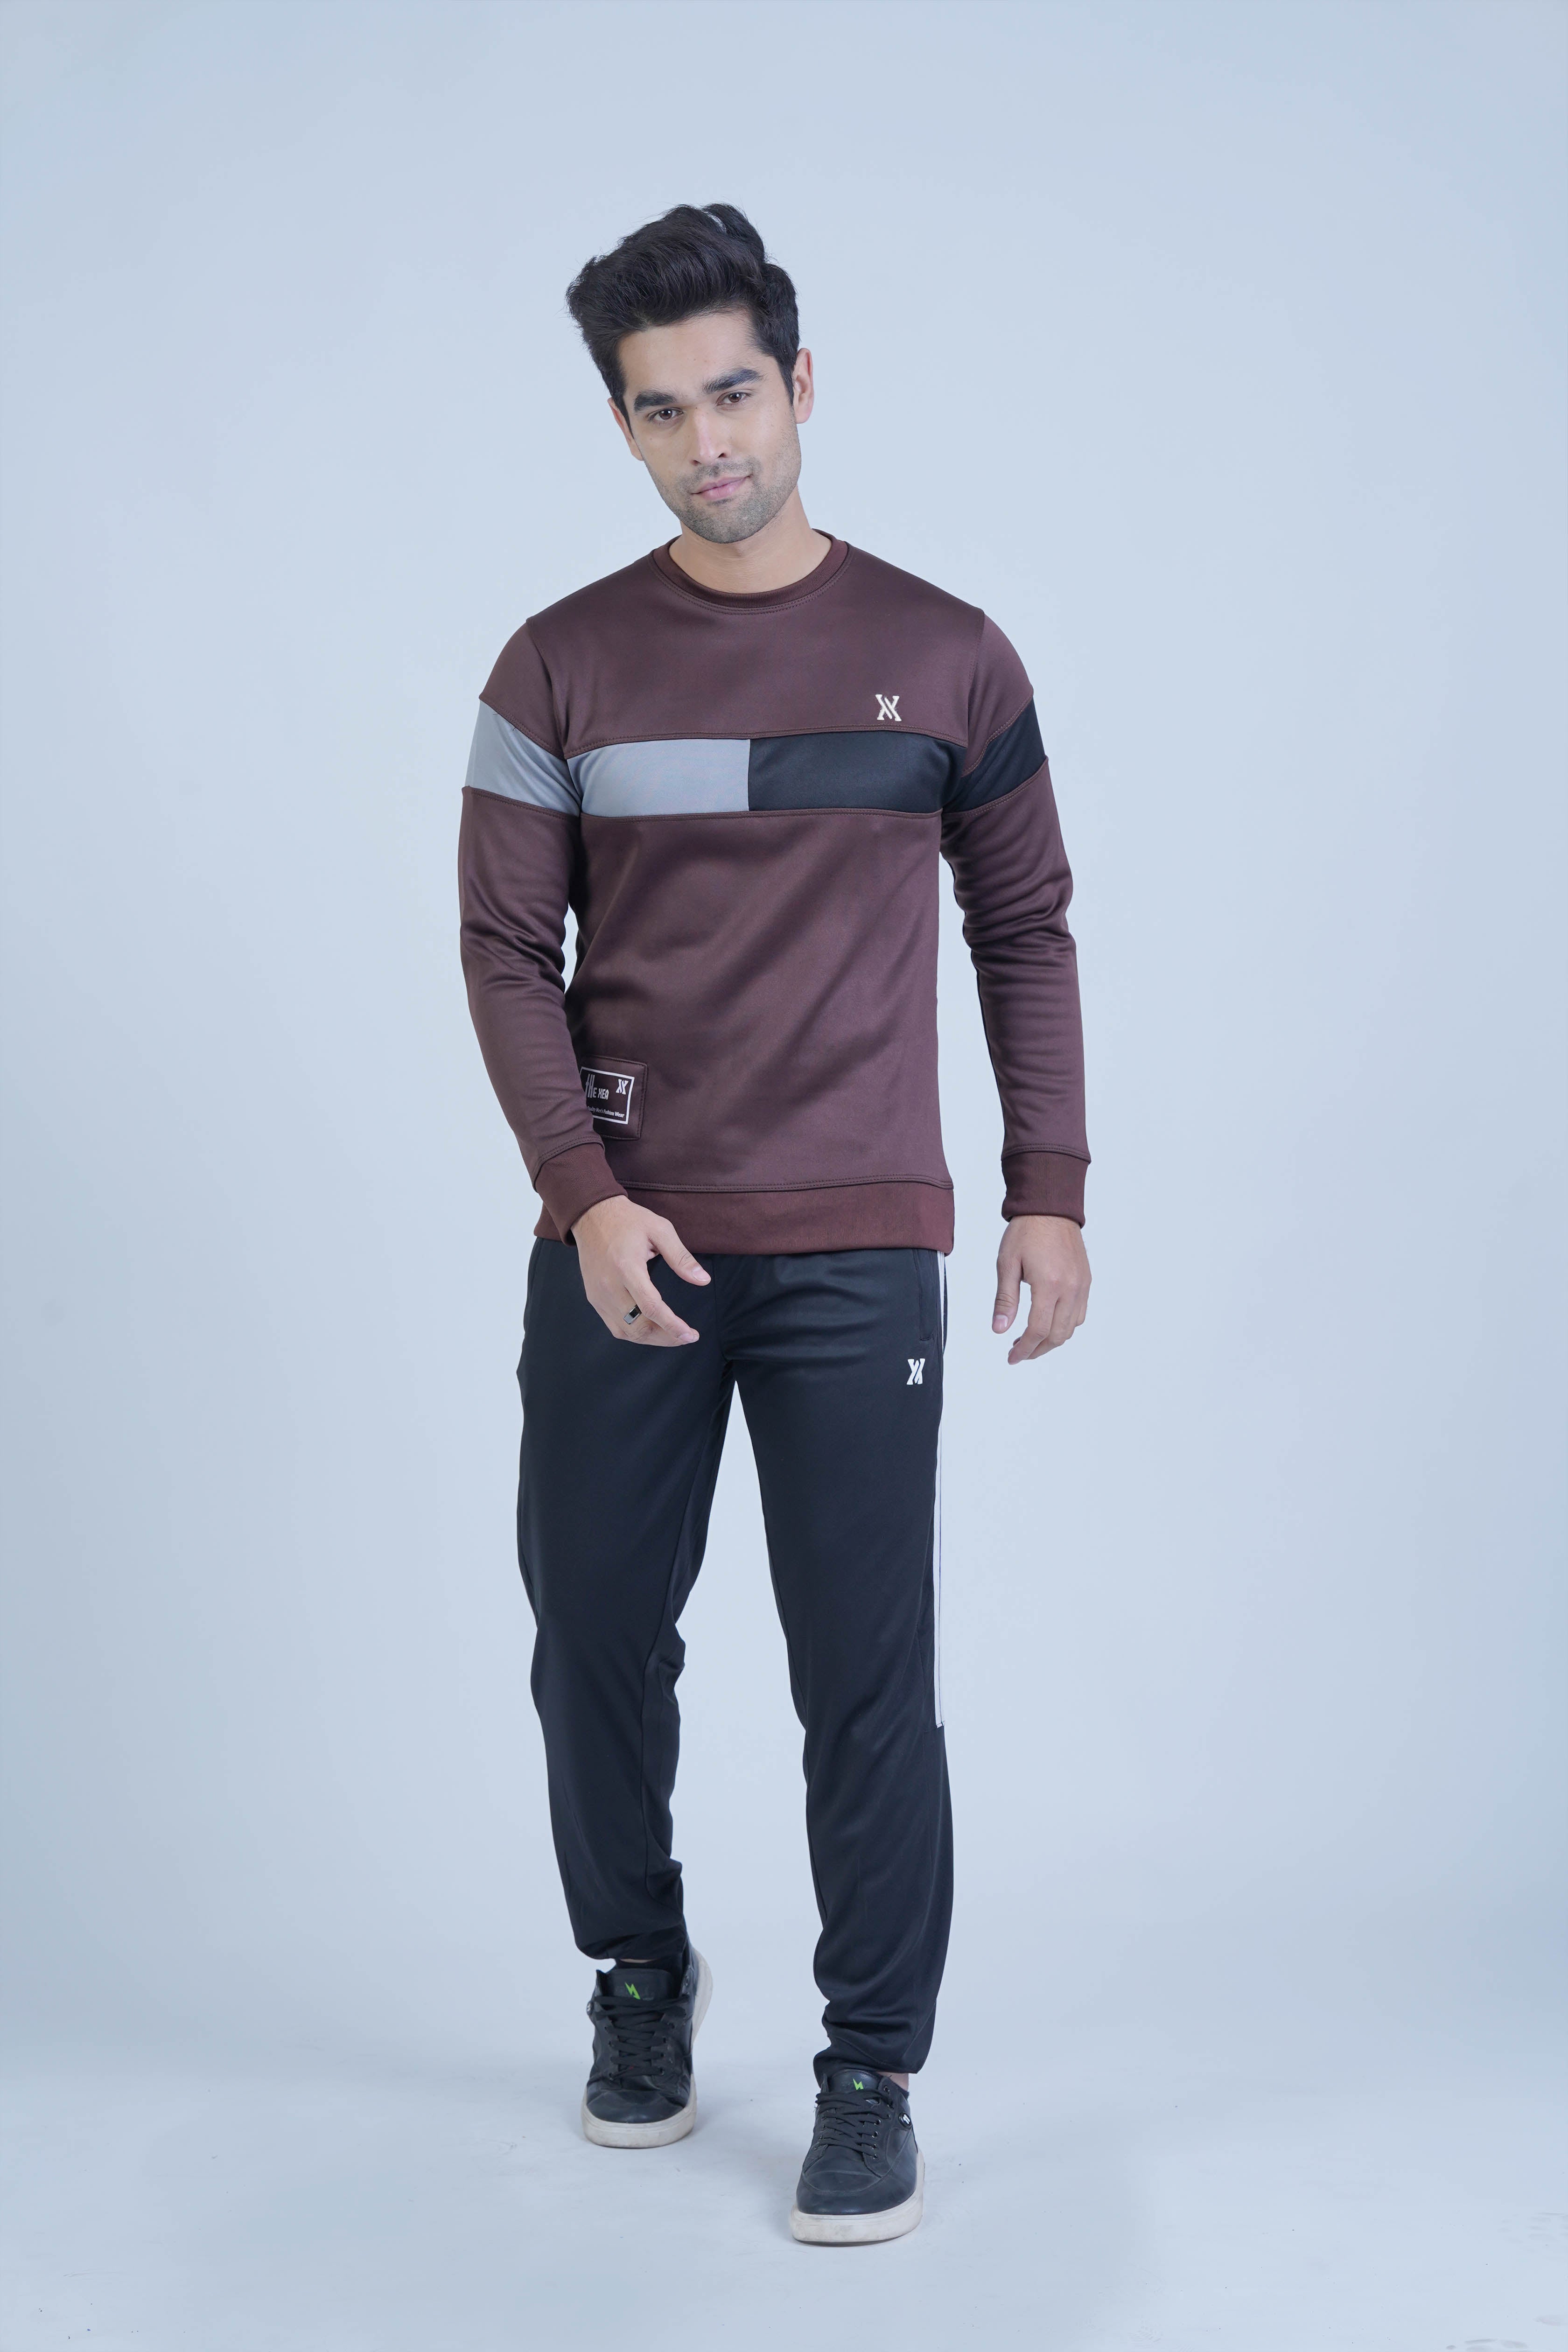  The Xea Urban Stripe Brown Sweatshirt